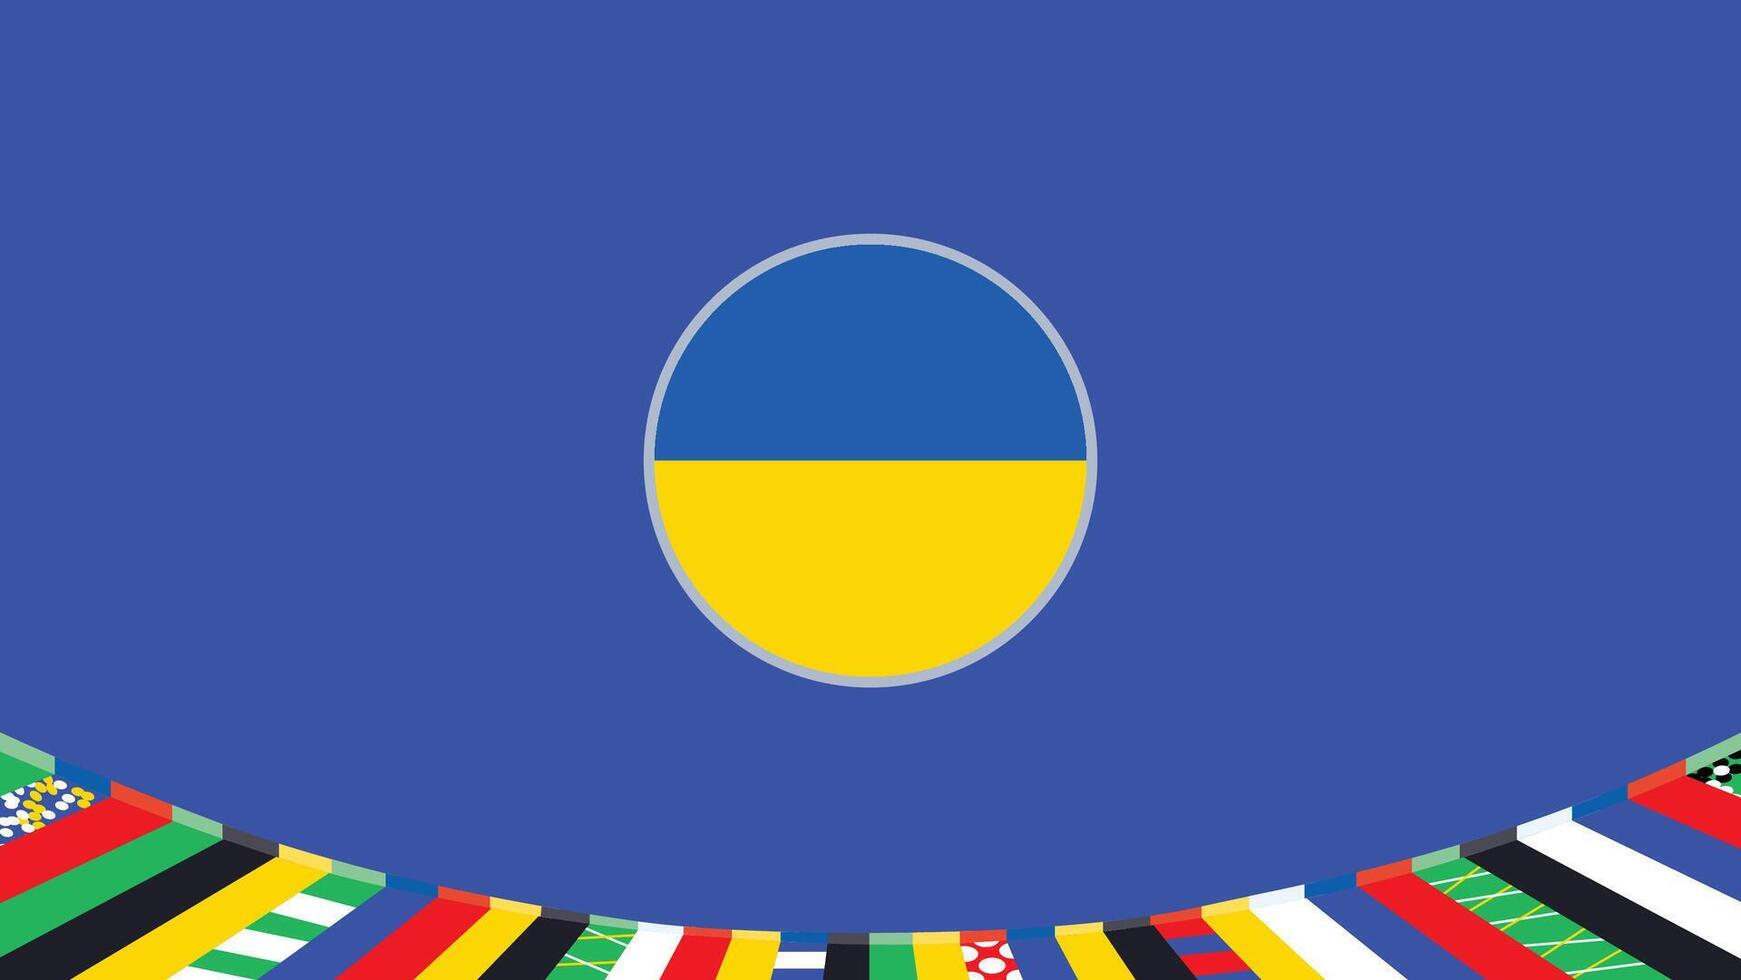 Ukraine emblème drapeau européen nations 2024 équipes des pays européen Allemagne Football symbole logo conception illustration vecteur